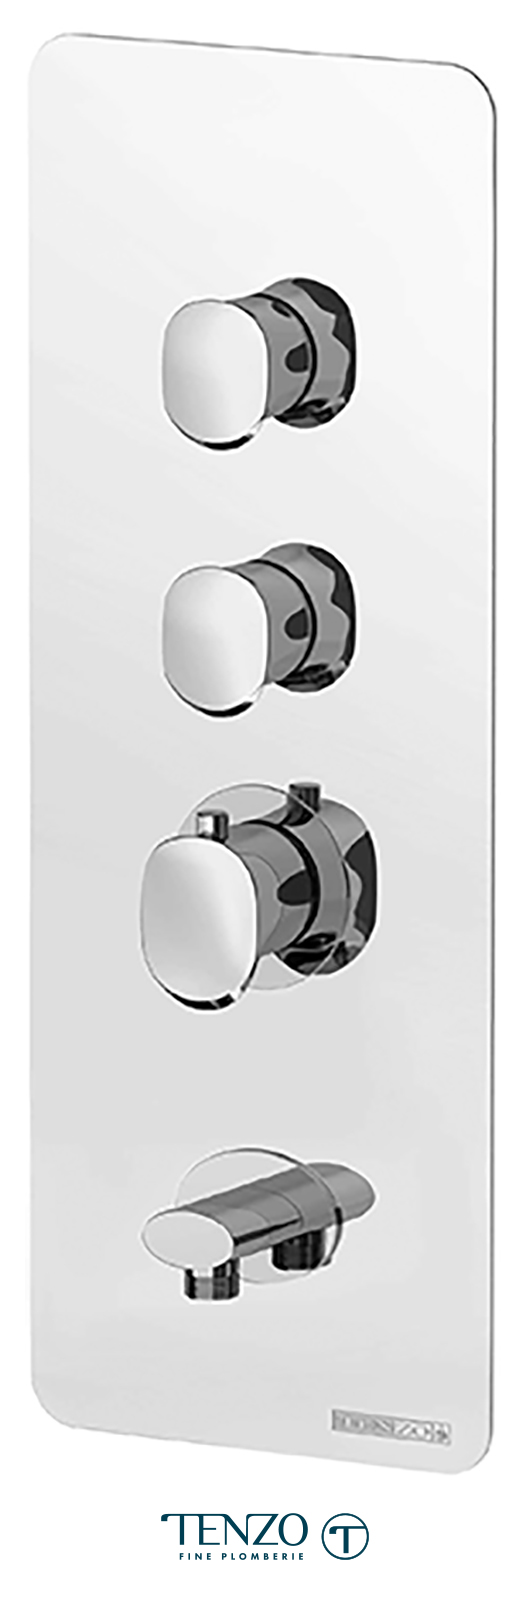 Outil Modèle:Modèle 4-2 pièces tumundo Chrome Set Charnière Oscillant Douche en Verre Porte Montage Mural Salle De Bain Métal Brillant Glass 